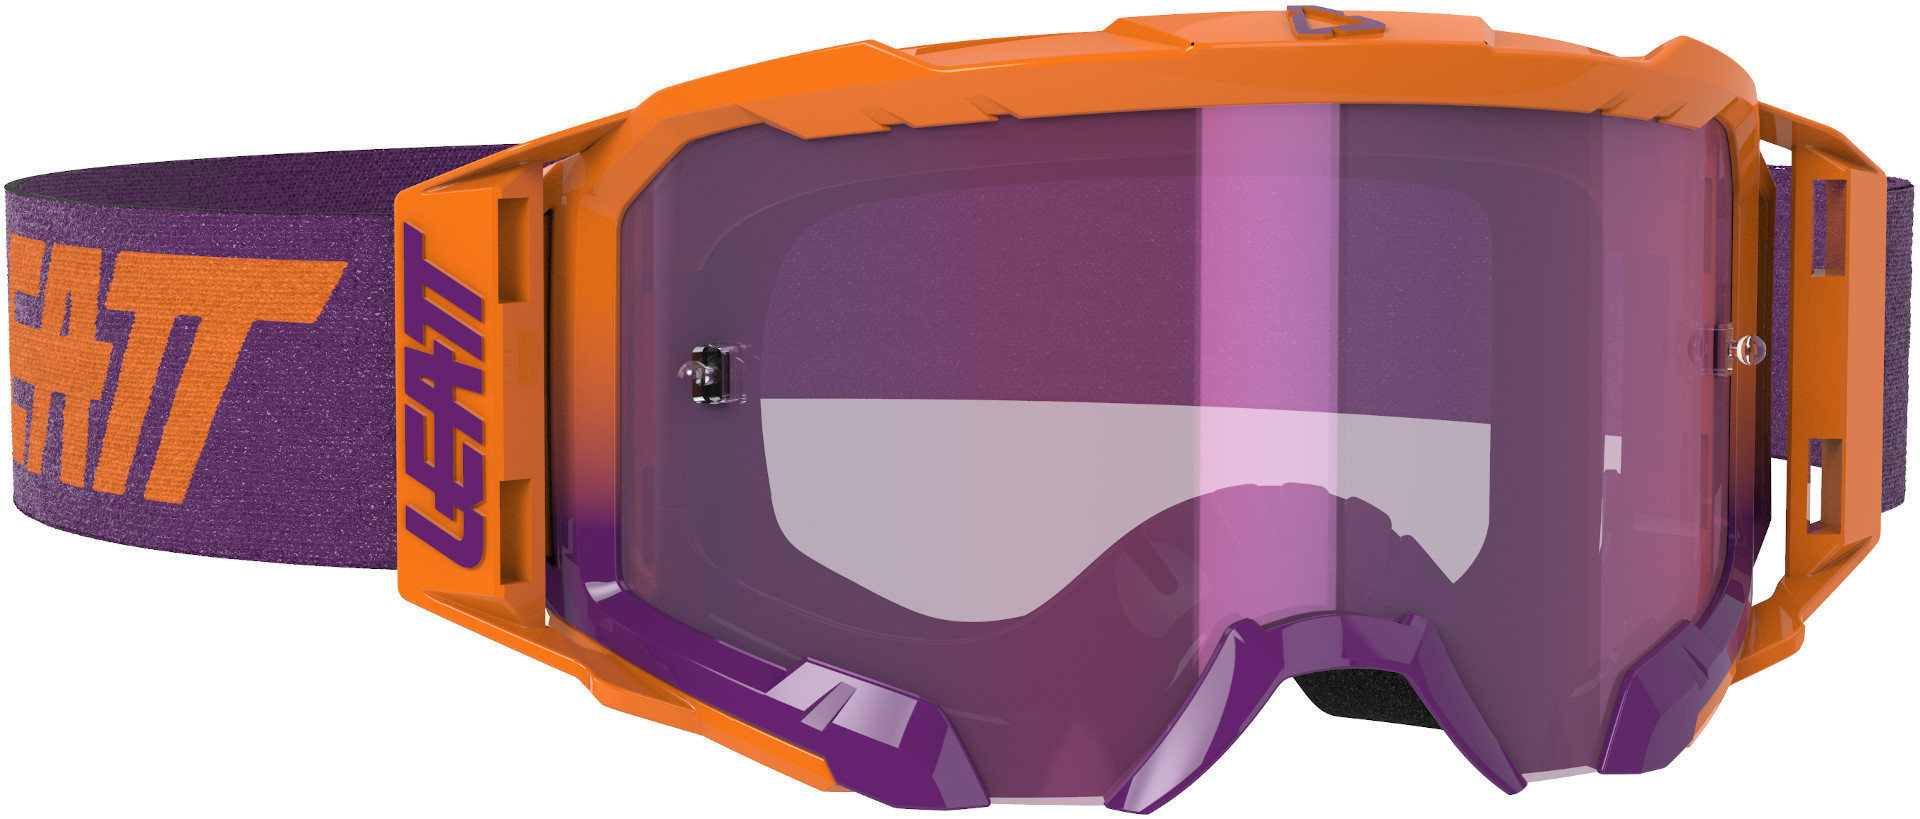 Очки Leatt Velocity 5.5 Iriz Мотокросс, пурпурные очки leatt velocity 5 5 iriz мотокросс сине красные